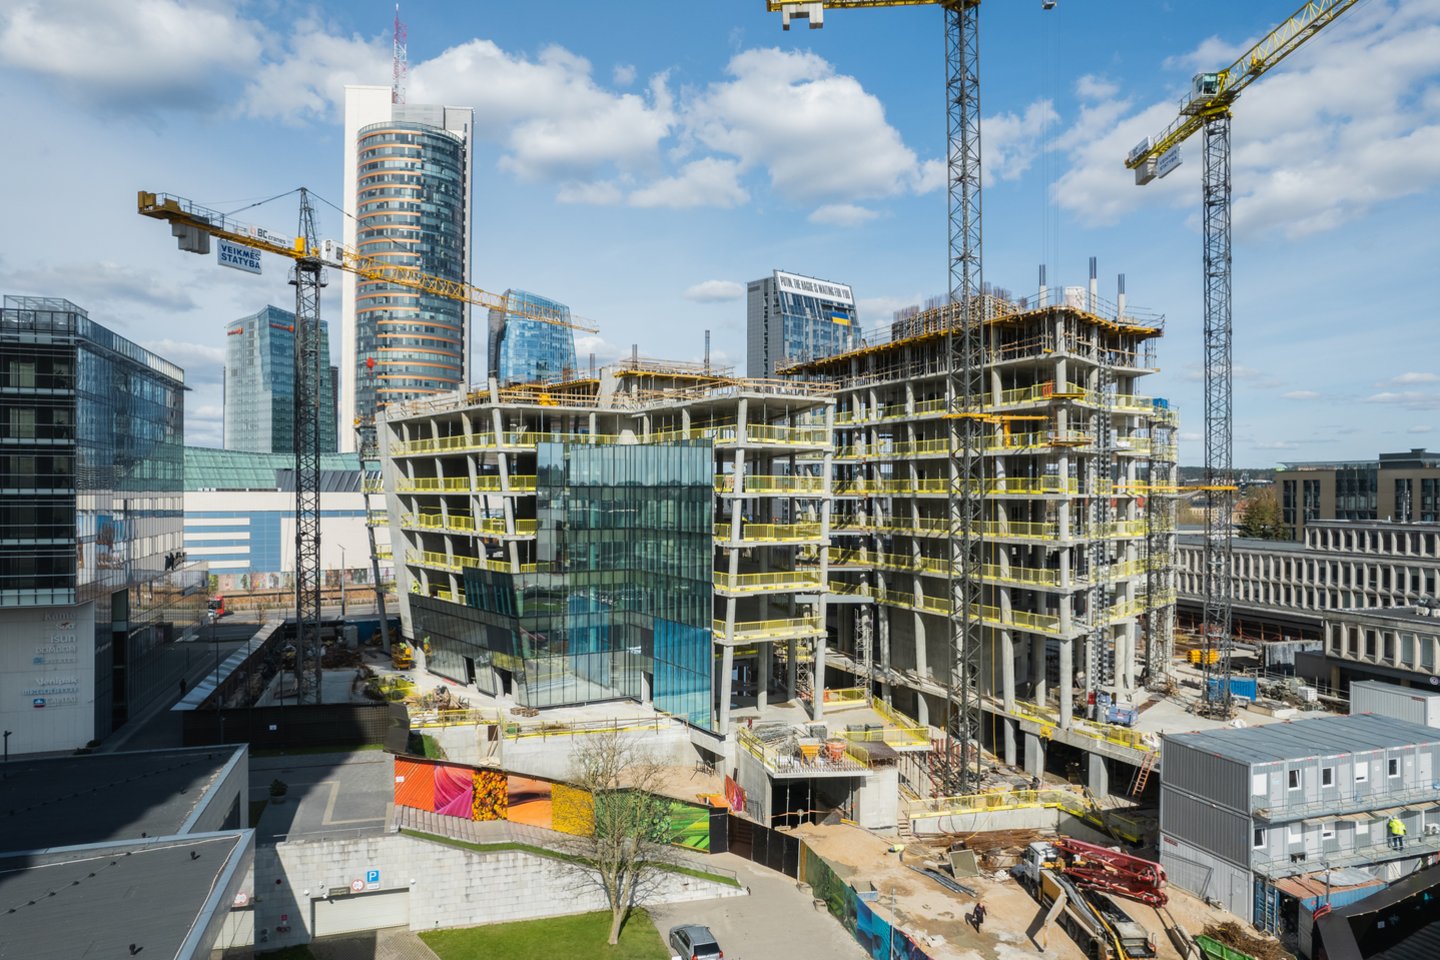 Verslo centro statybas planuojama užbaigti kitų metų rugsėjį tačiau pastate jau dabar išnuomota maždaug trečdalis (7 tūkst. kv. m) rinkai siūlomo biuro patalpų ploto.<br>„Lords LB Asset Management“ nuotr.